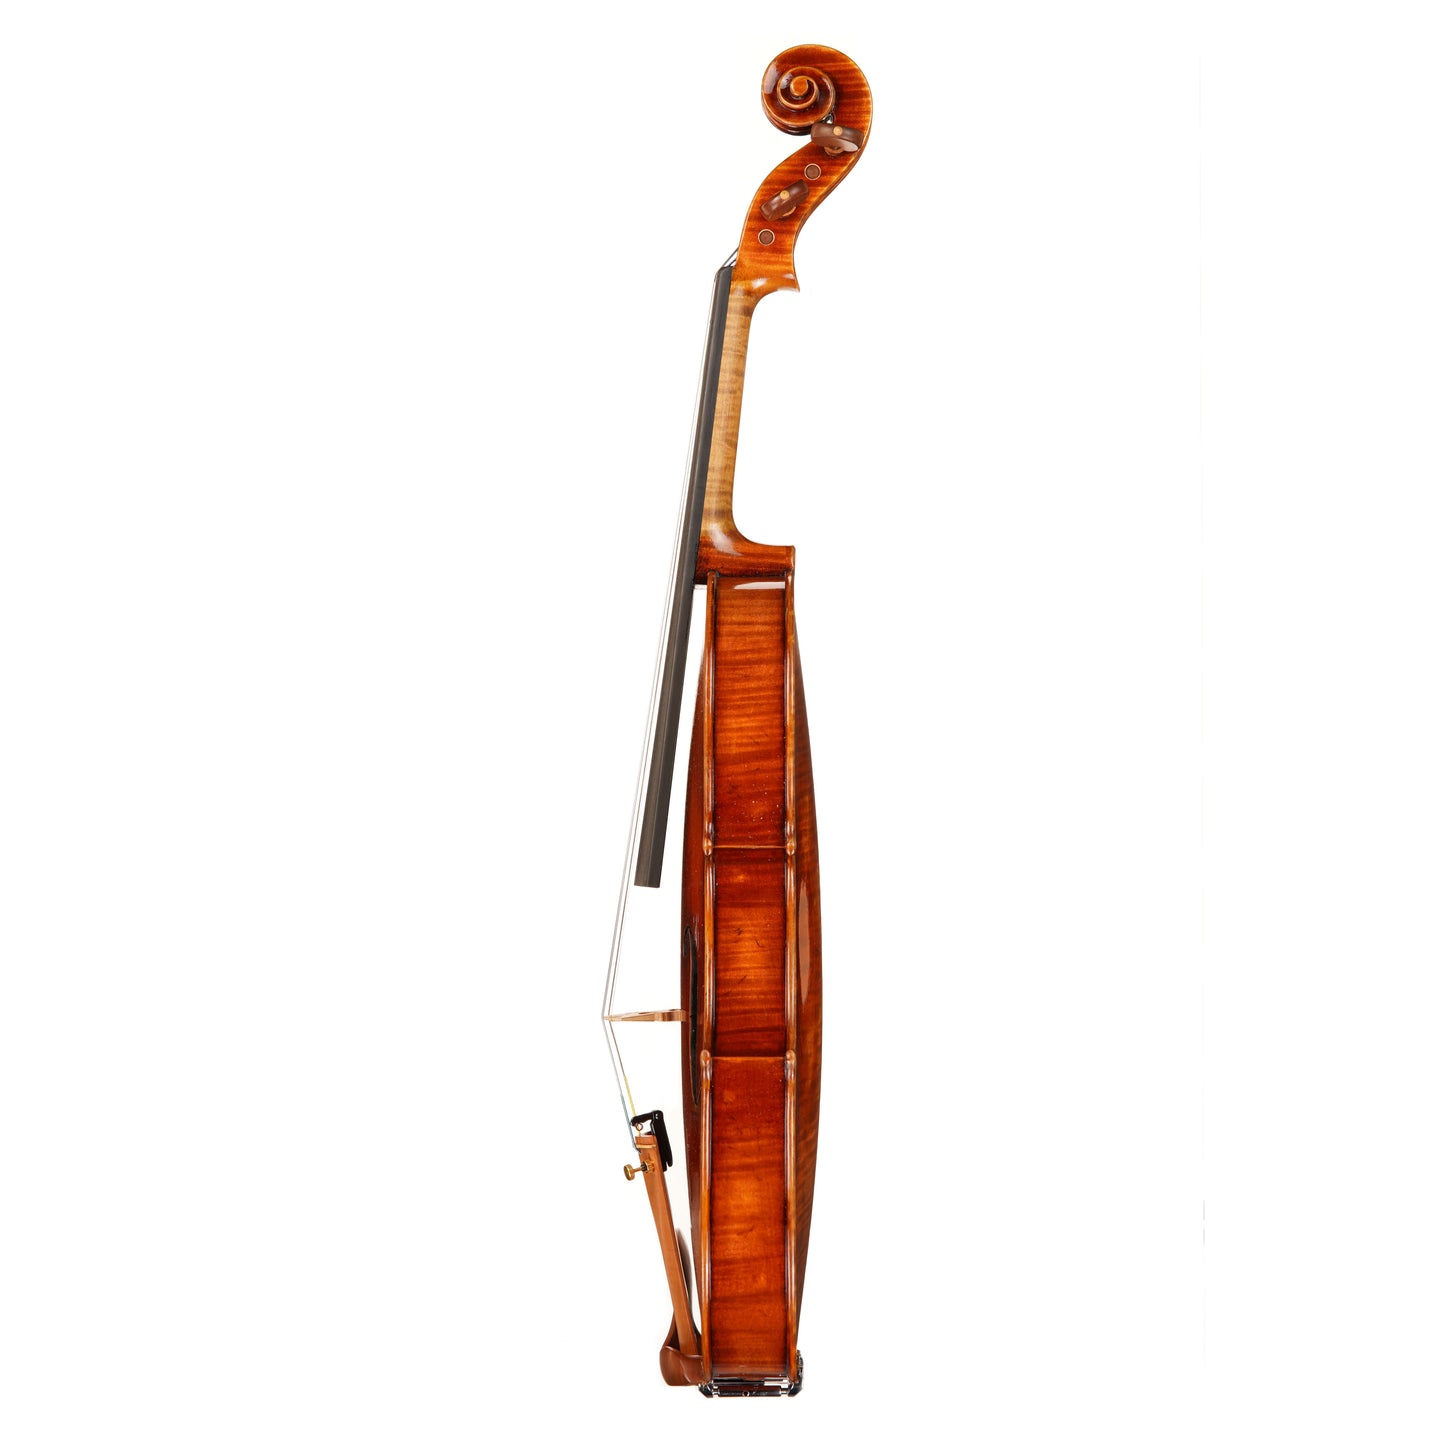 Ming Jiang Zhu MJA-700 Viola 16"